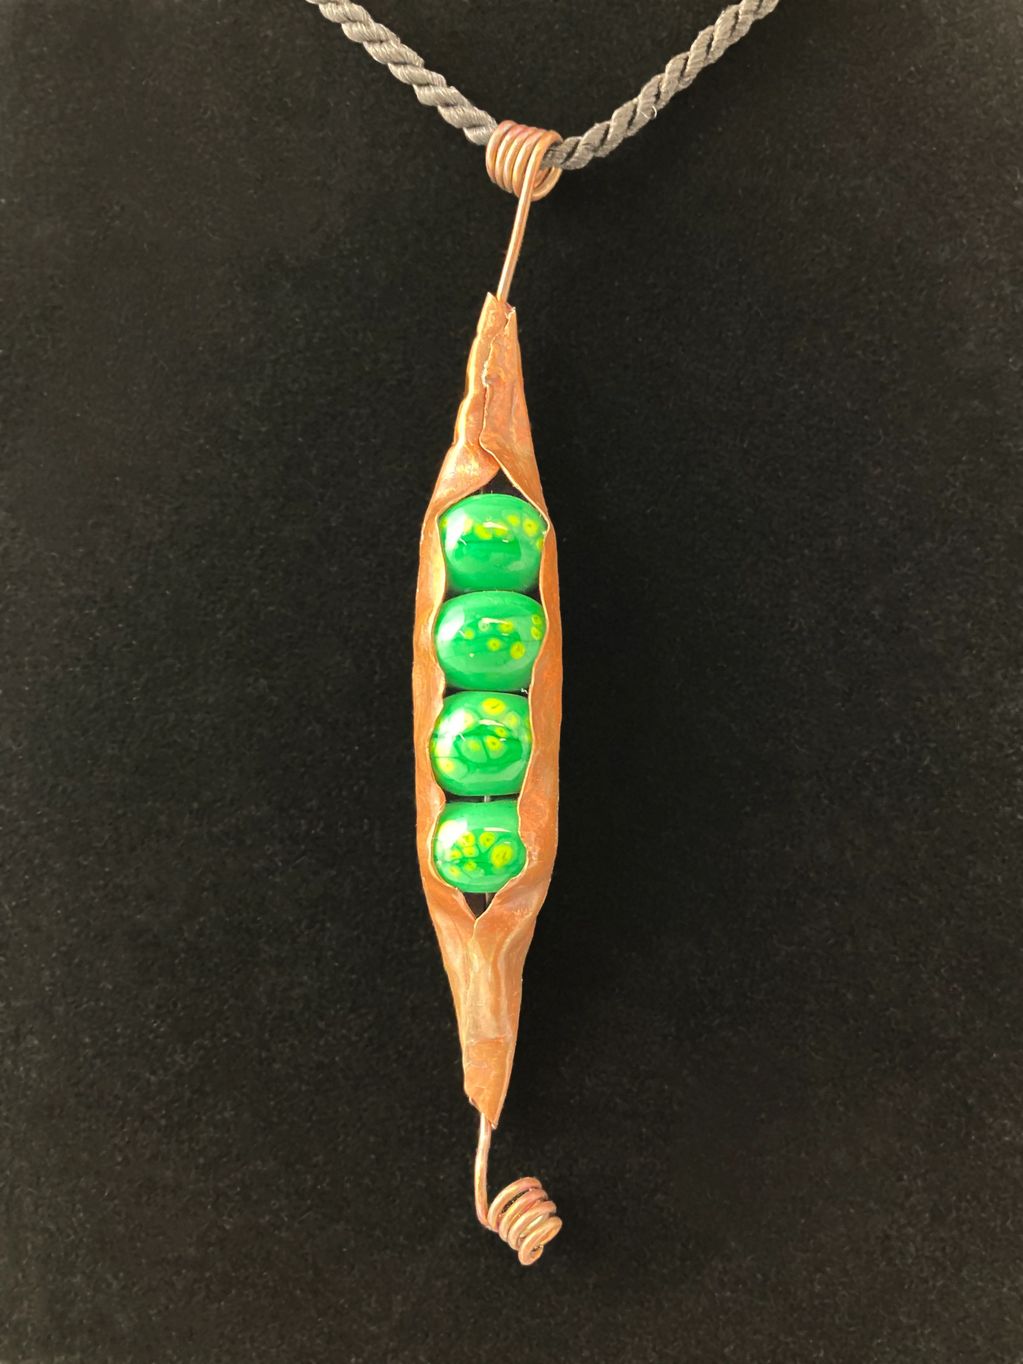 Peas in a Pod (copper)
